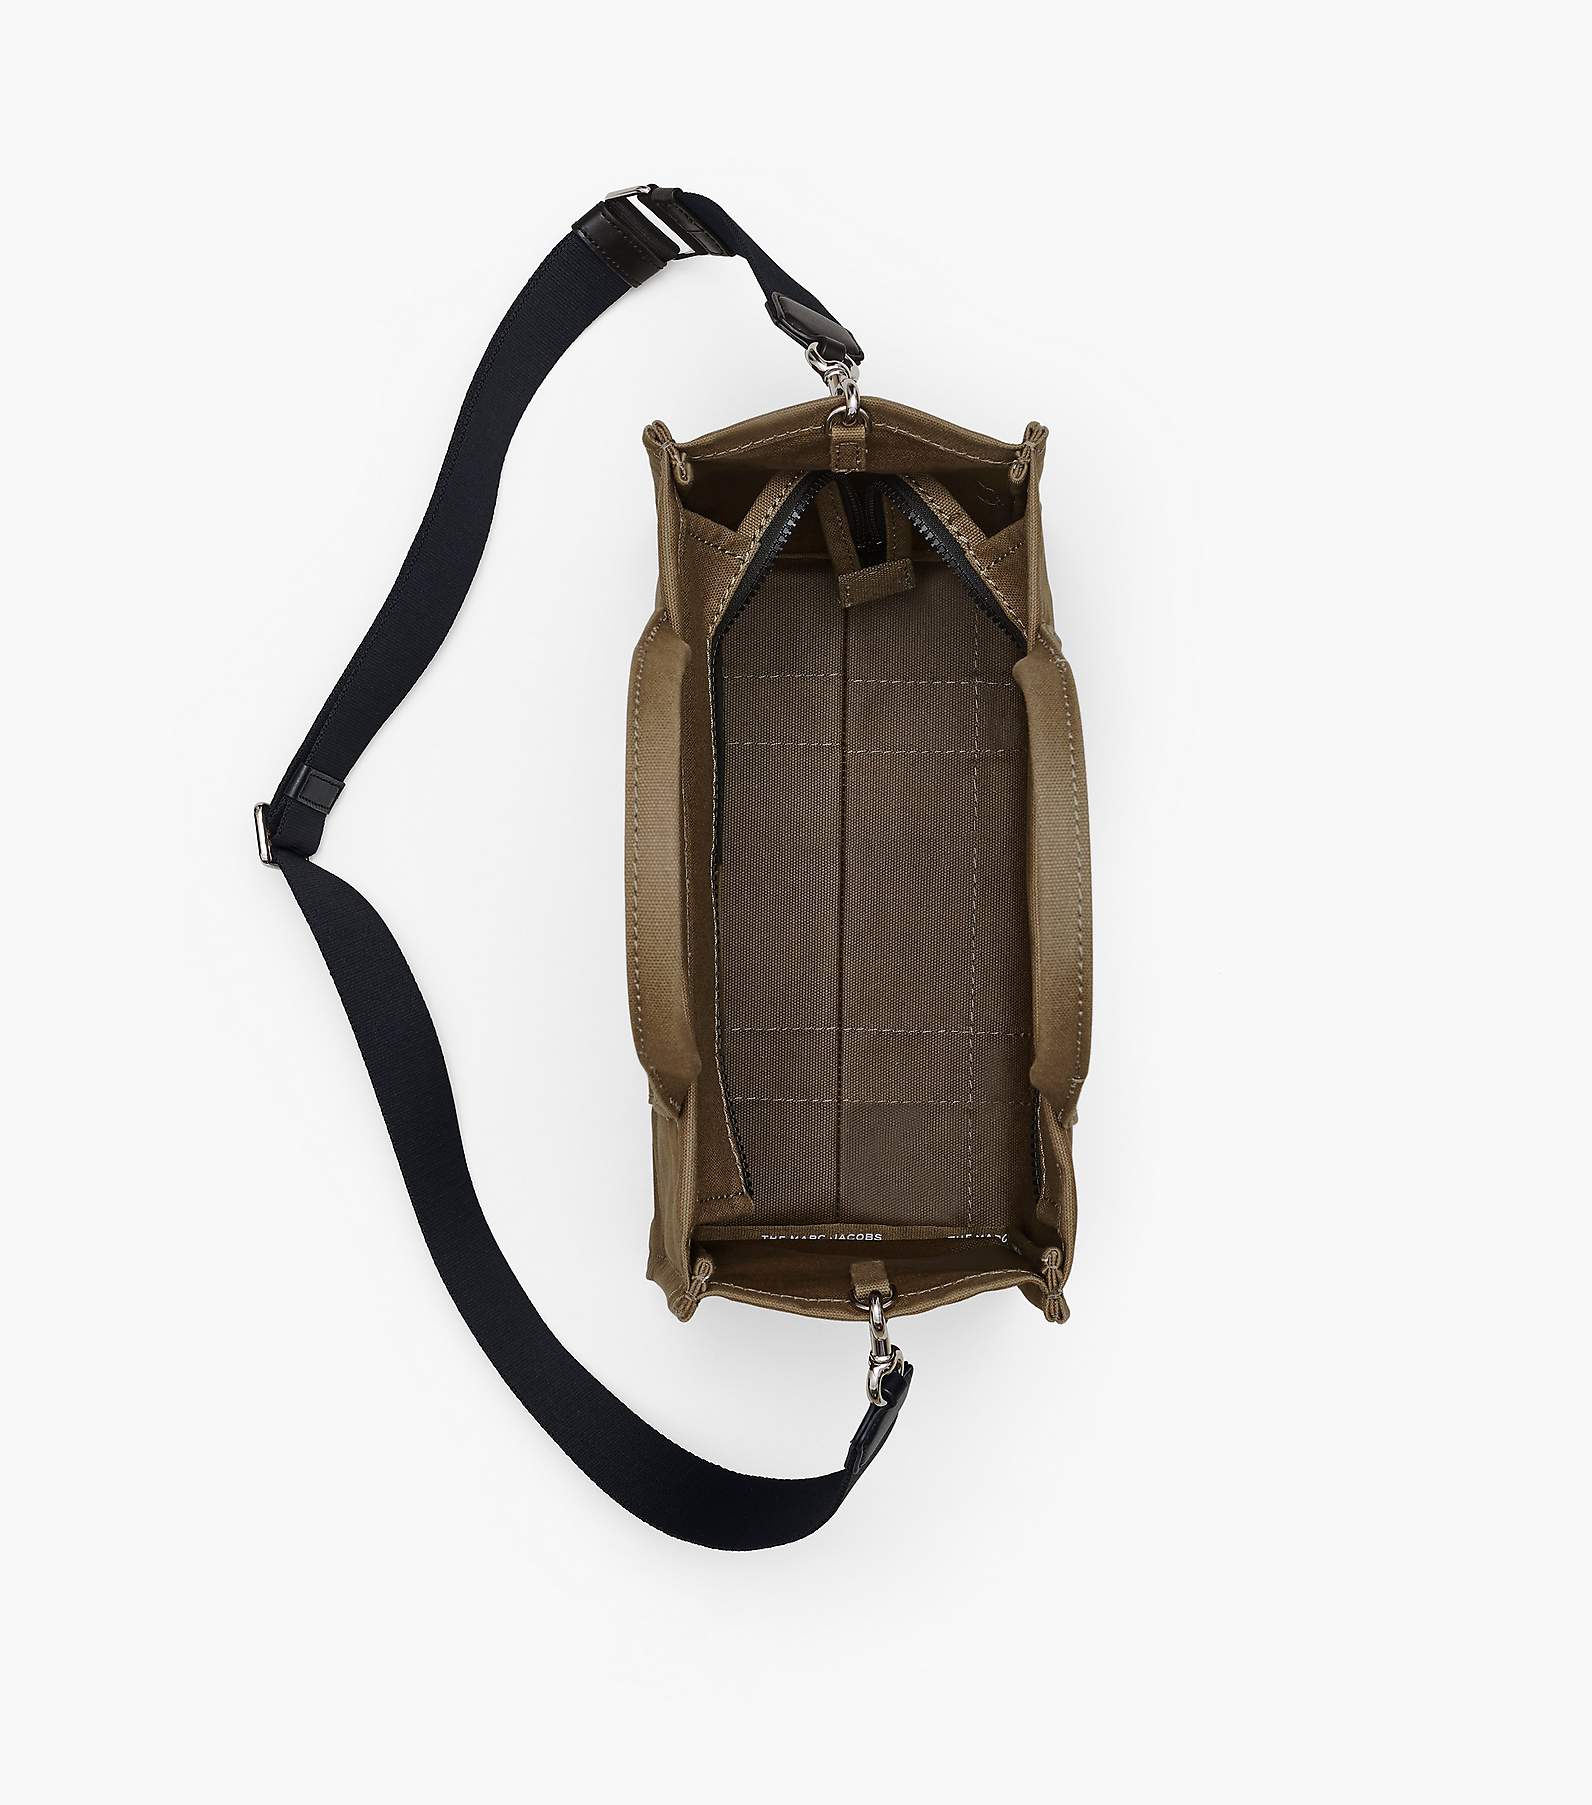 The Medium Brown Bag